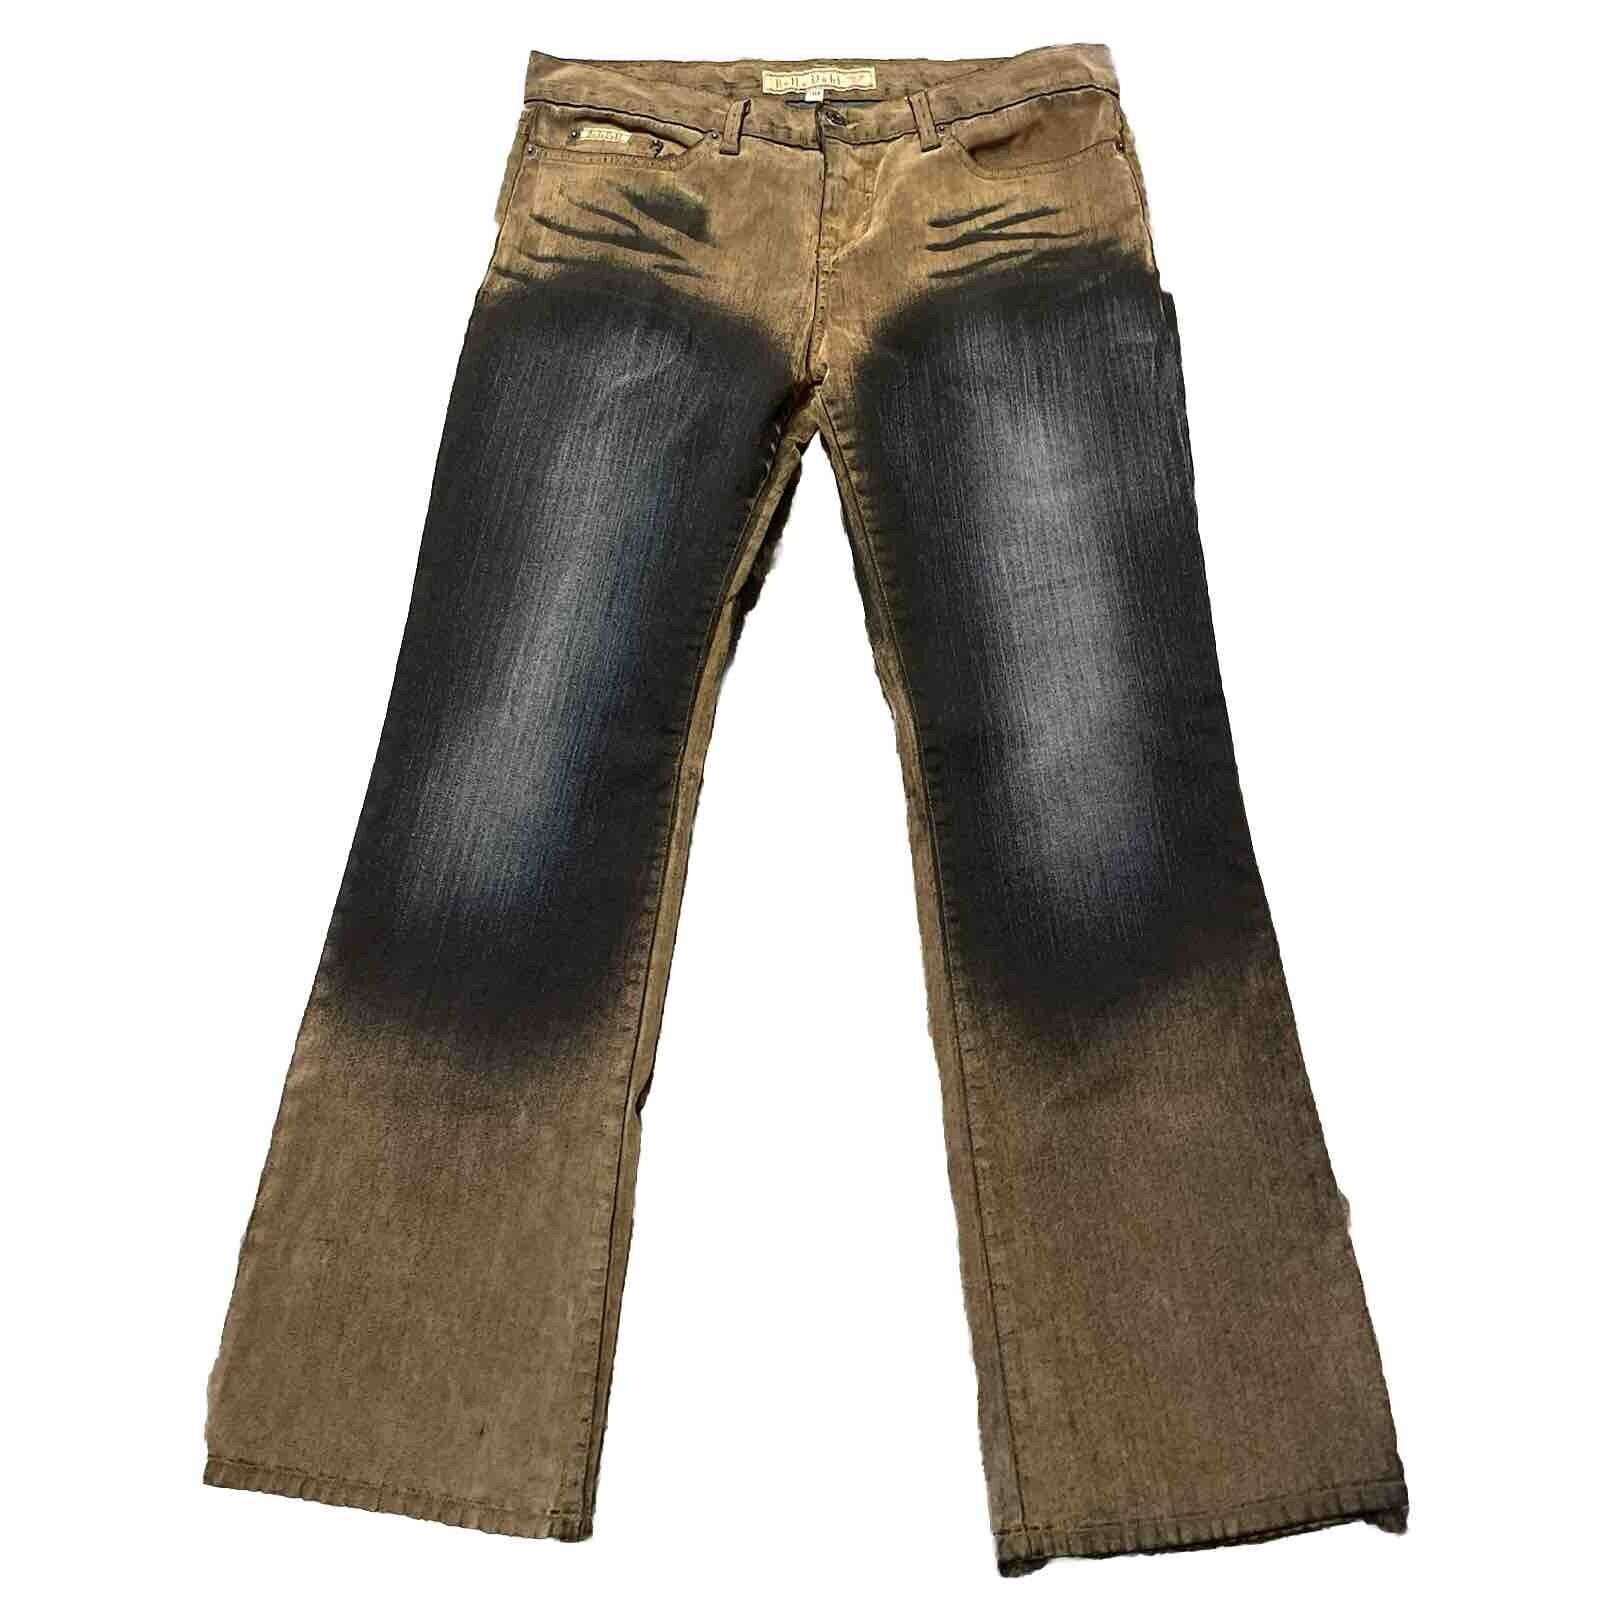 Bella Dahl Low Rise Boot Cut Jeans Pants Sz 30 Vintage Chic 32x30.5 Black Brown